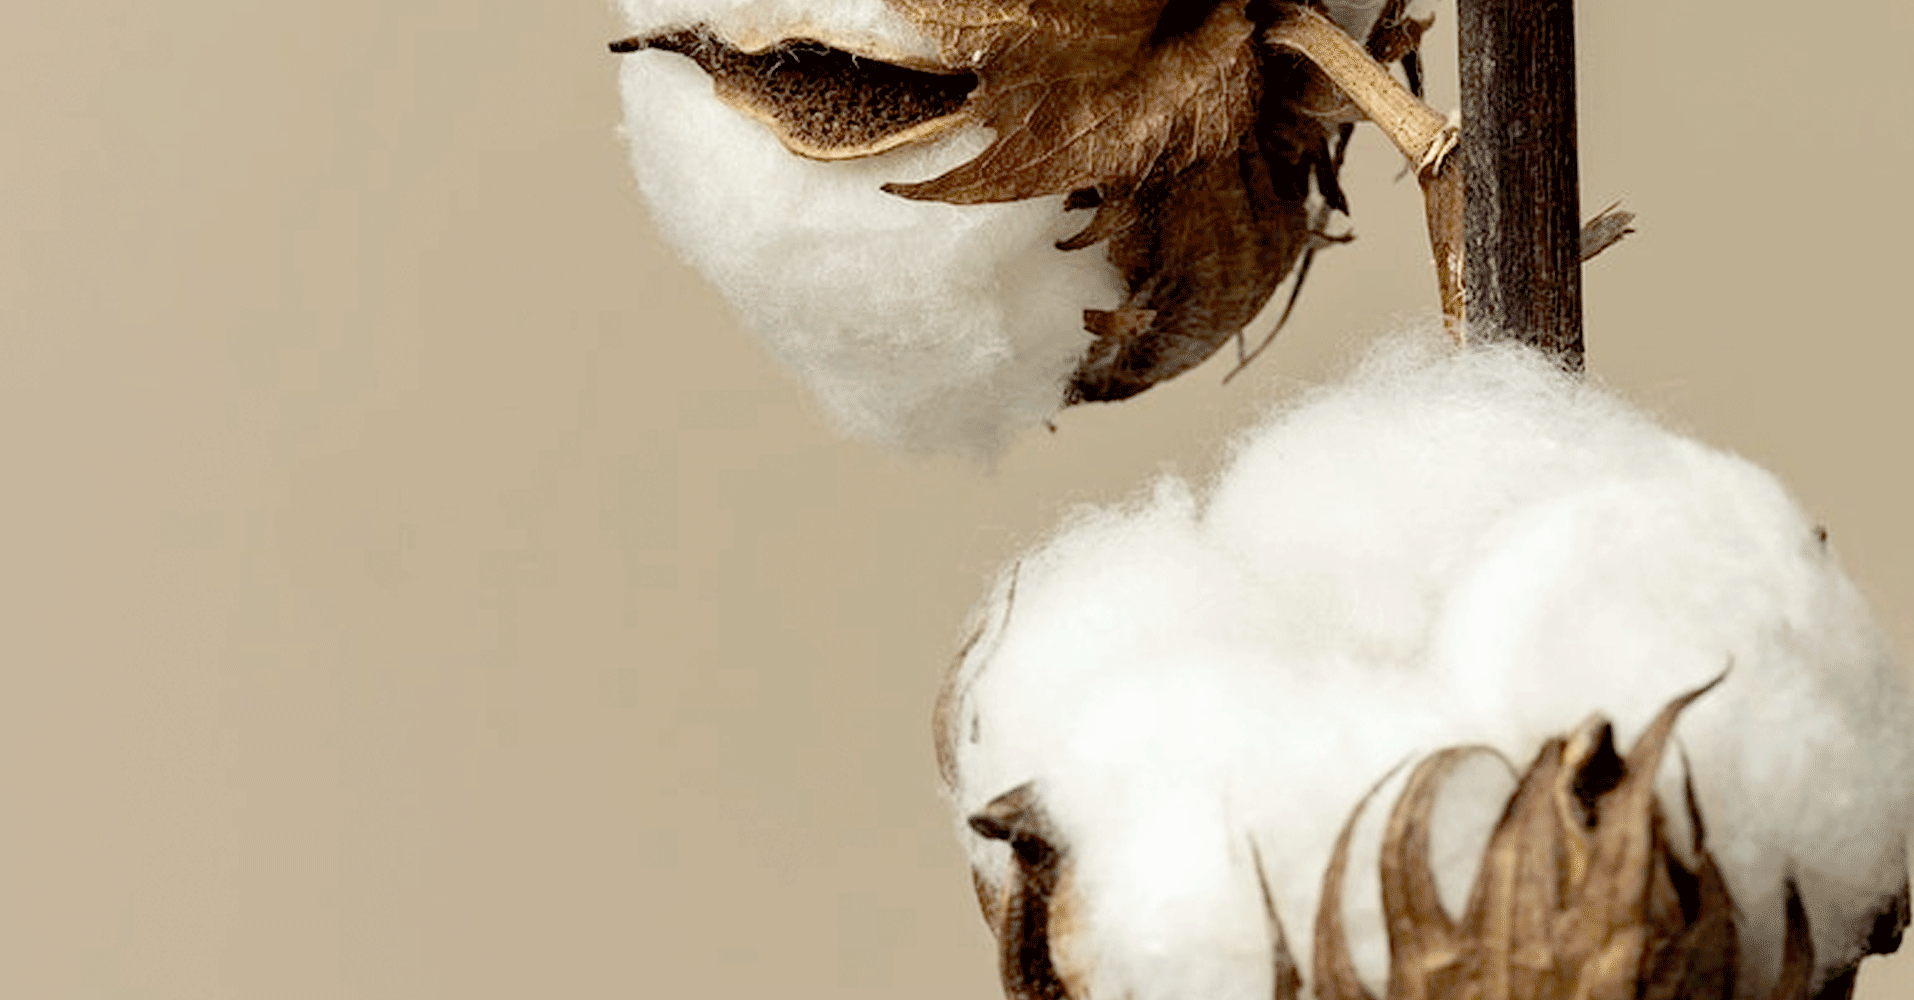 Cotton plant close up lifestyle image